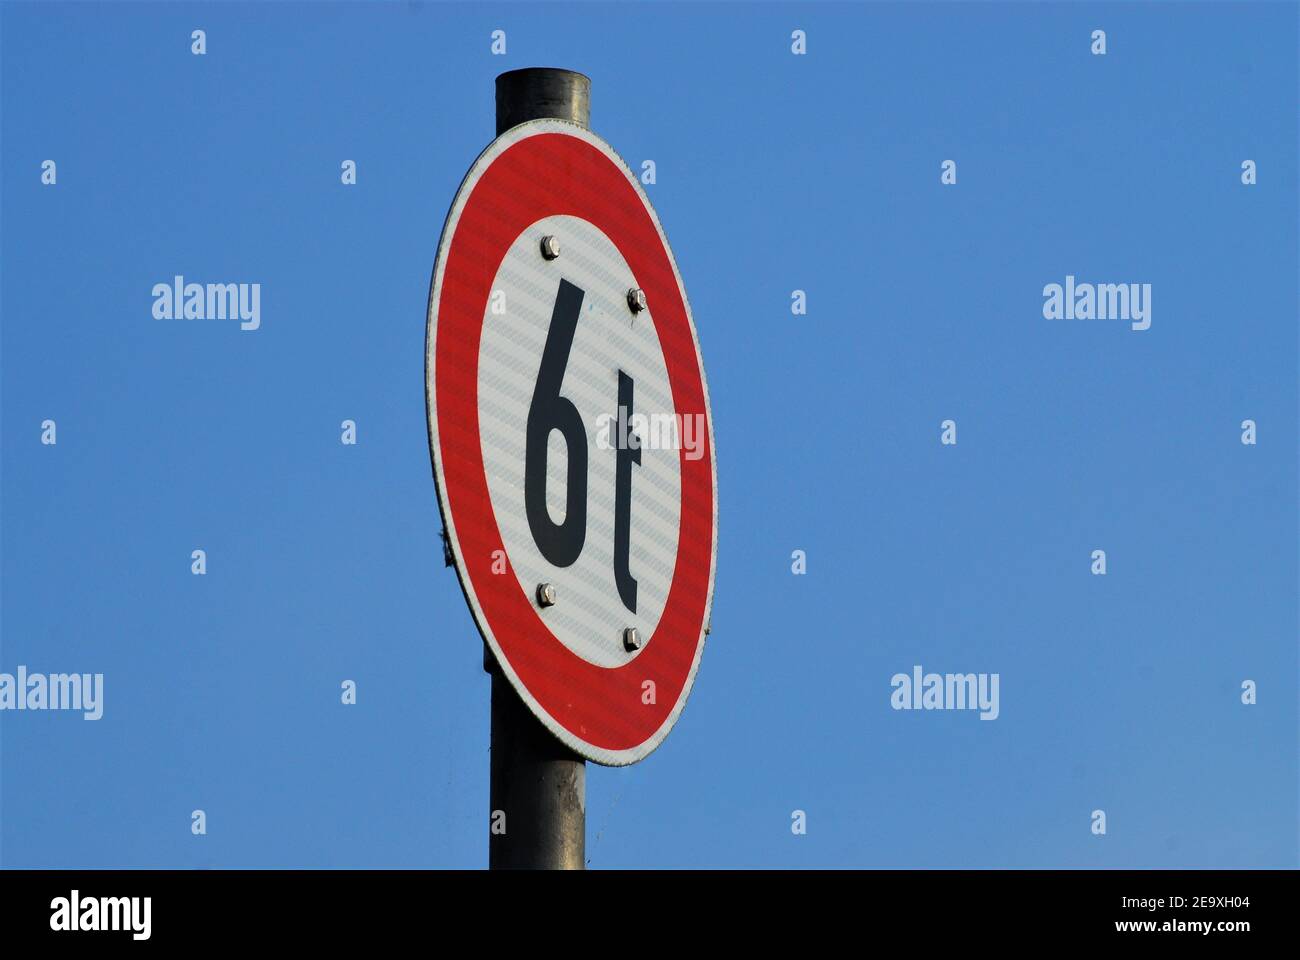 Segnale stradale 6t bianco con bordo rosso davanti a cielo blu asbackground Foto Stock